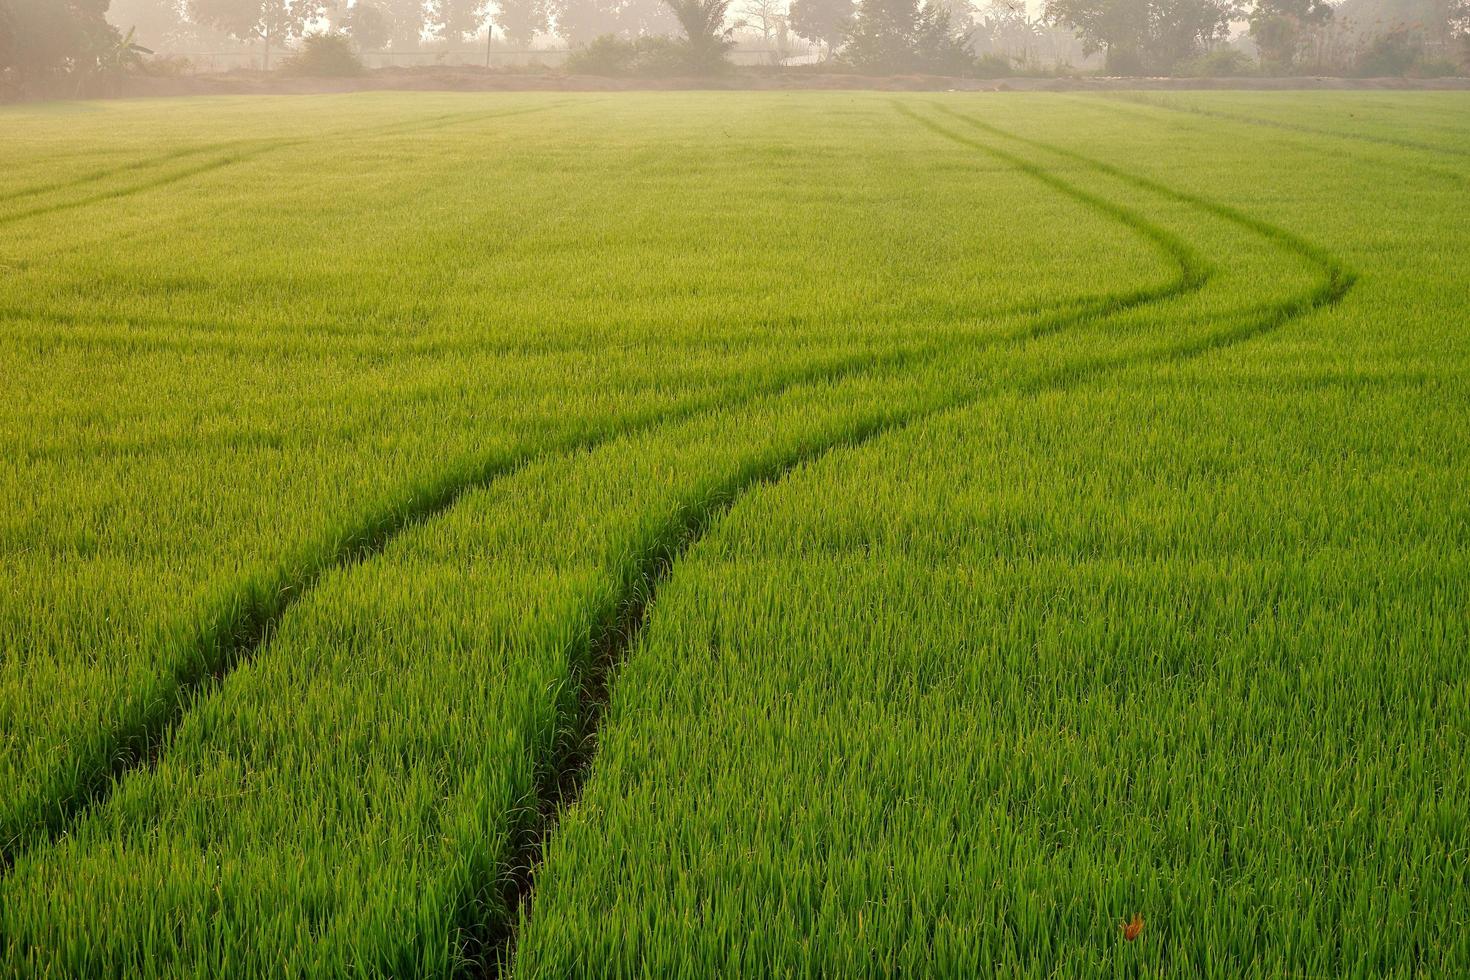 concentre-se em primeiro plano de faixas de trator de pulverizador de linha curva após pulverizar completamente fertilizantes ou herbicidas químicos no campo de arroz verde colorido no horário da manhã foto